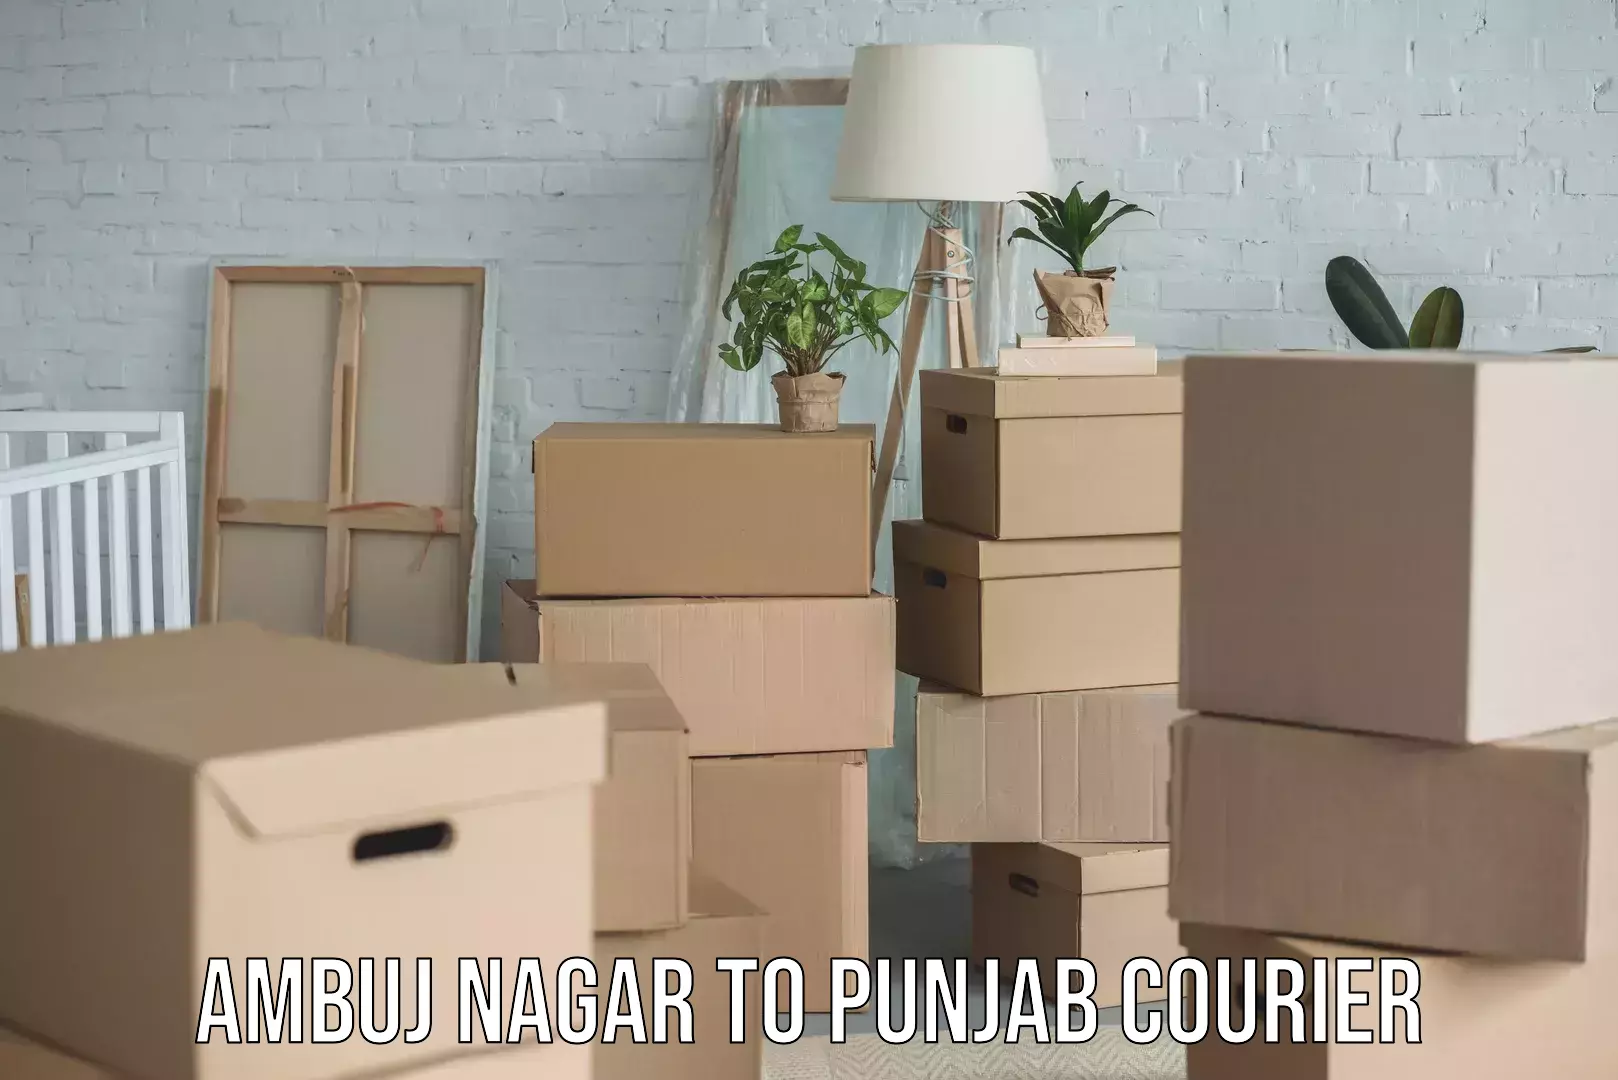 Professional courier handling Ambuj Nagar to Punjab